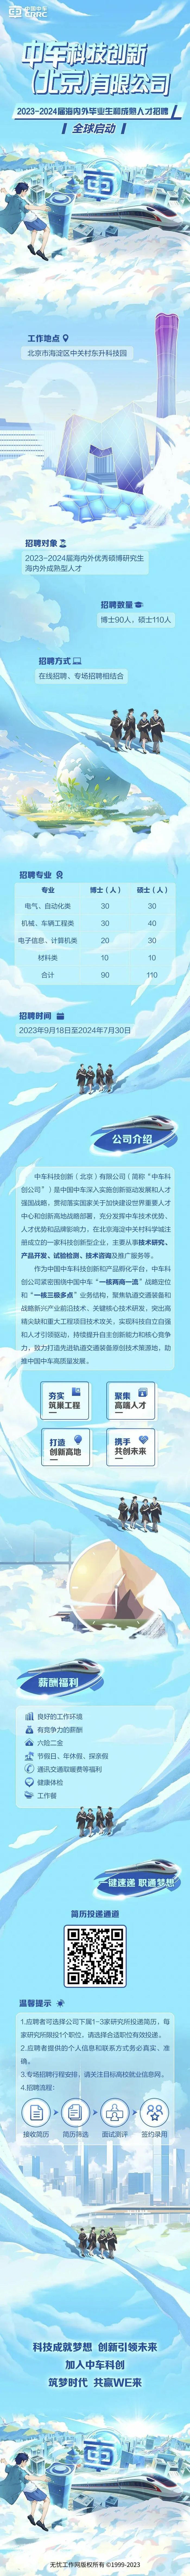 【校招+社招】中车科技创新（北京）有限公司海内外人才招聘全球启动